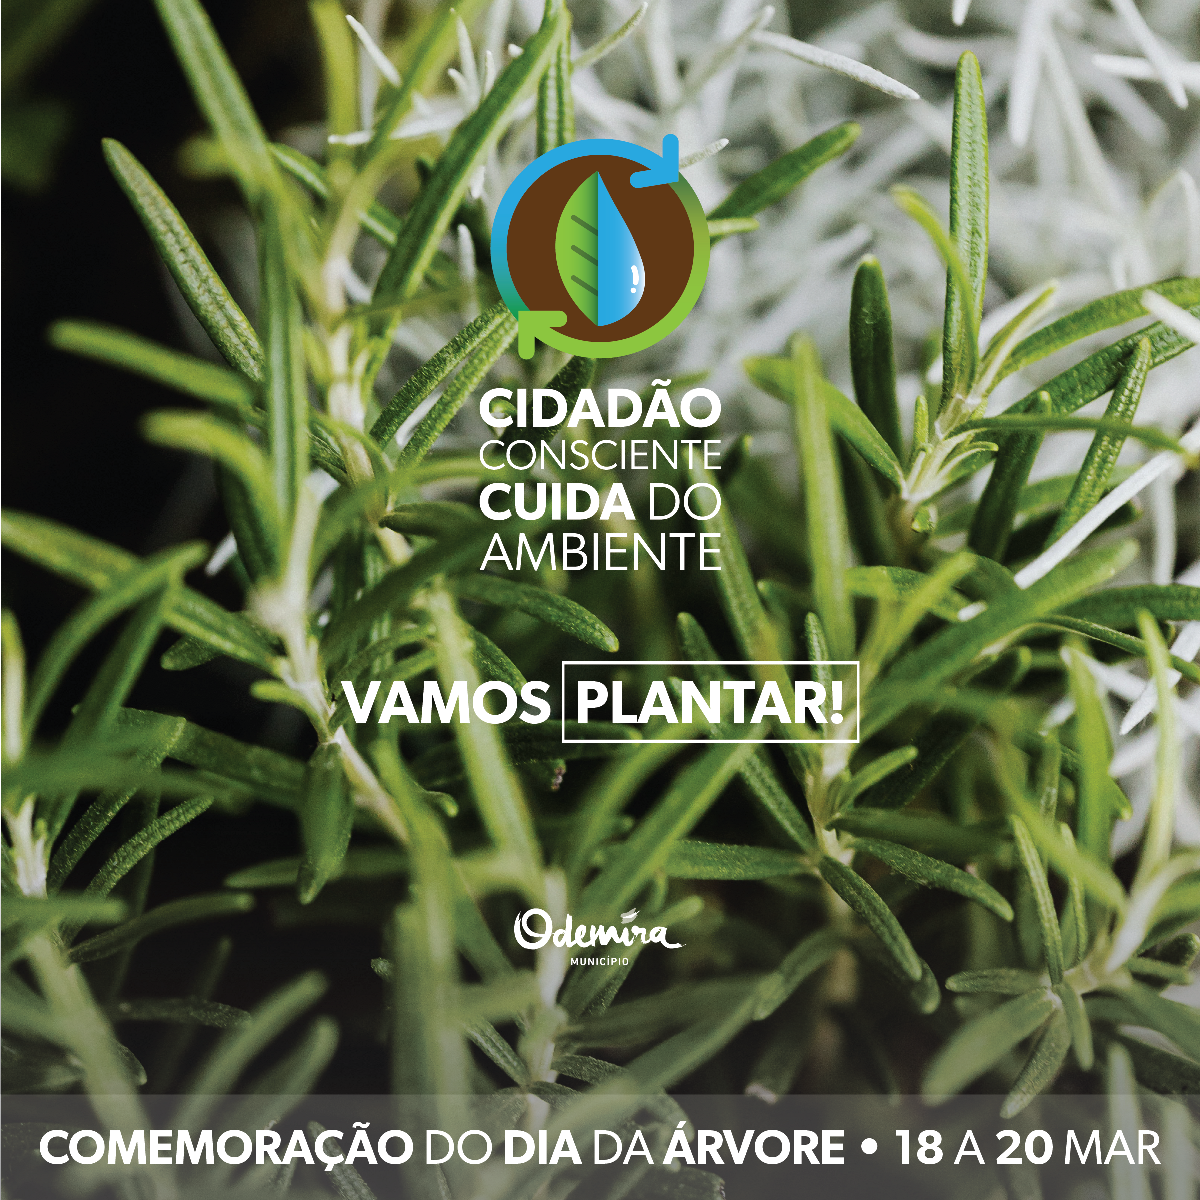 Vamos Plantar! Município de Odemira oferece árvores à população